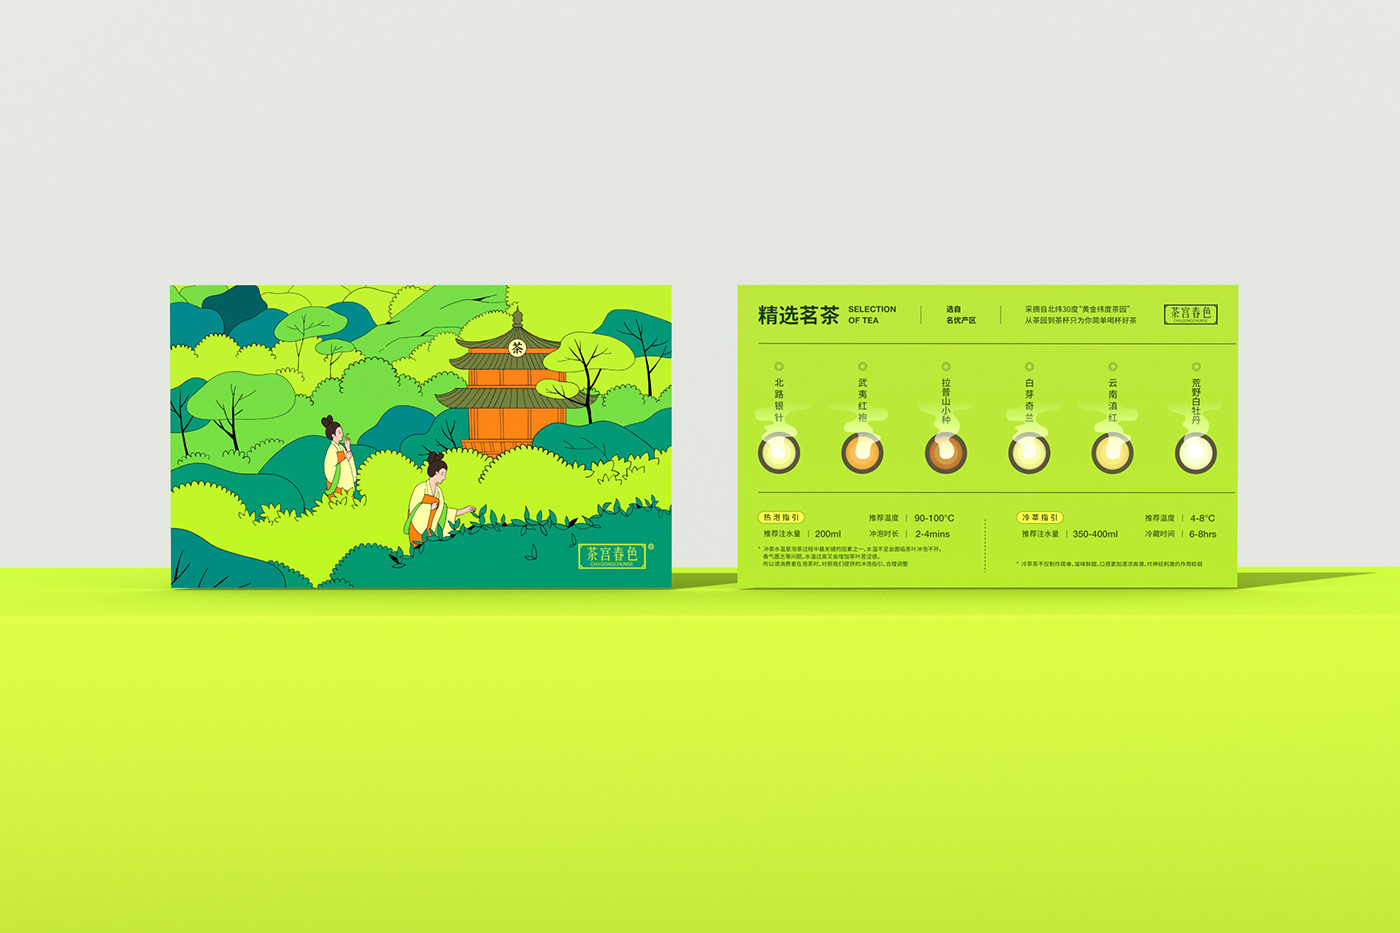 灯具 Packaging 메타그린 中国风   메이저공원 Brand Design tea